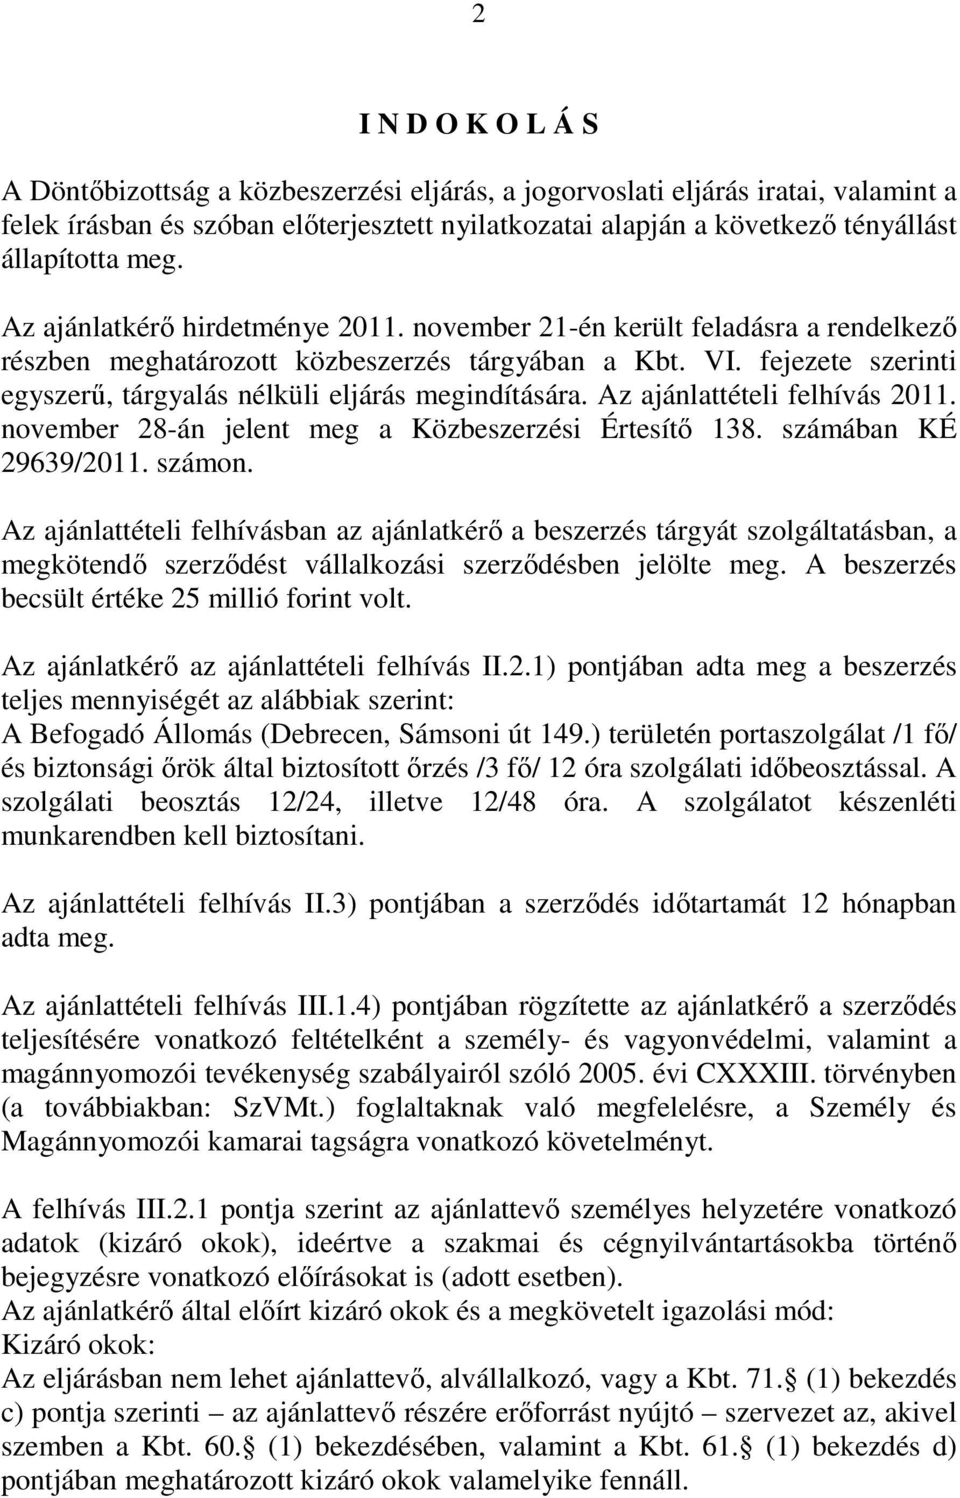 fejezete szerinti egyszerő, tárgyalás nélküli eljárás megindítására. Az ajánlattételi felhívás 2011. november 28-án jelent meg a Közbeszerzési Értesítı 138. számában KÉ 29639/2011. számon.